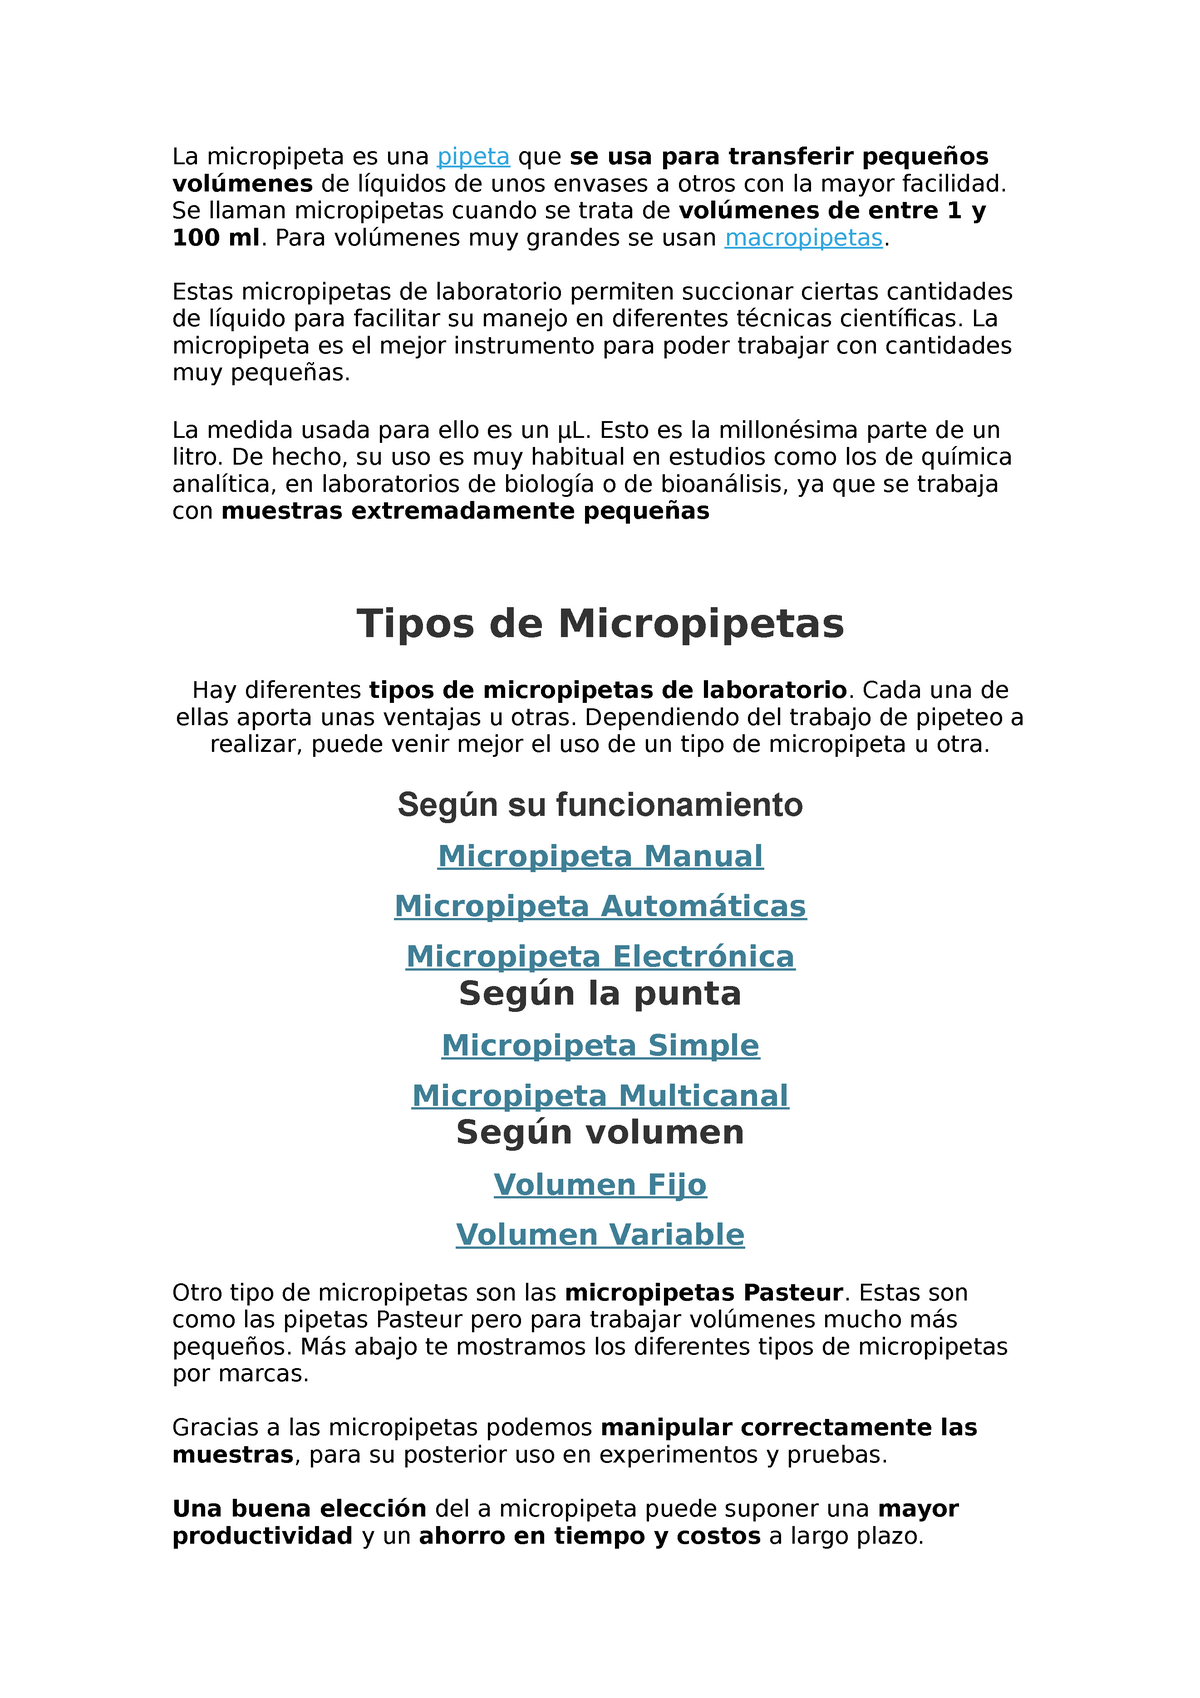 Word micropipetas - La micropipeta es pipeta se usa para transferir pequeños volúmenes de - Studocu